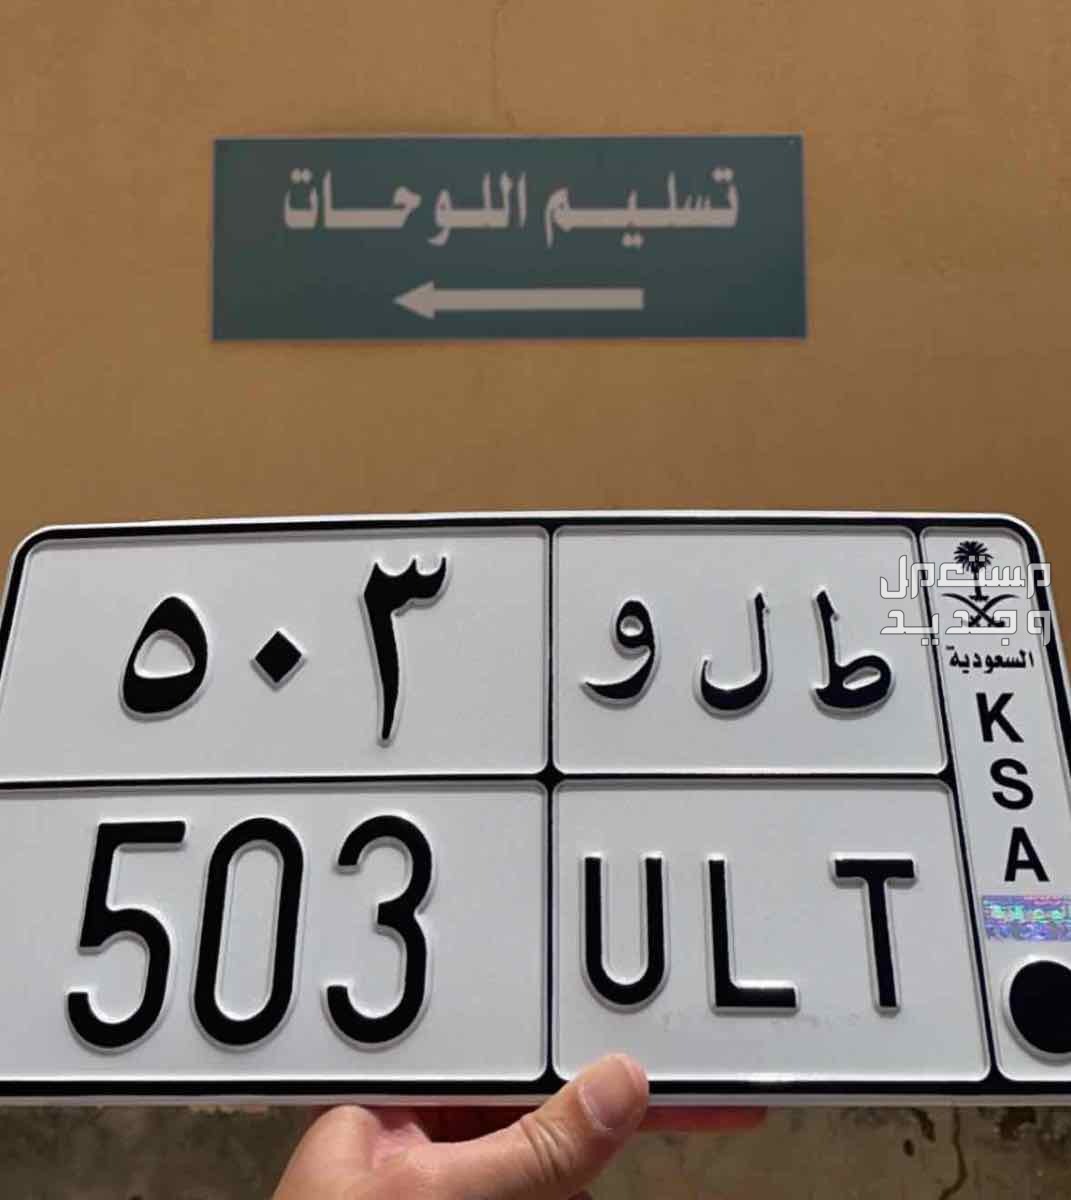 لوحة مميزة ط ل و - 503 - خصوصي في الرياض بسعر 35 ألف ريال سعودي